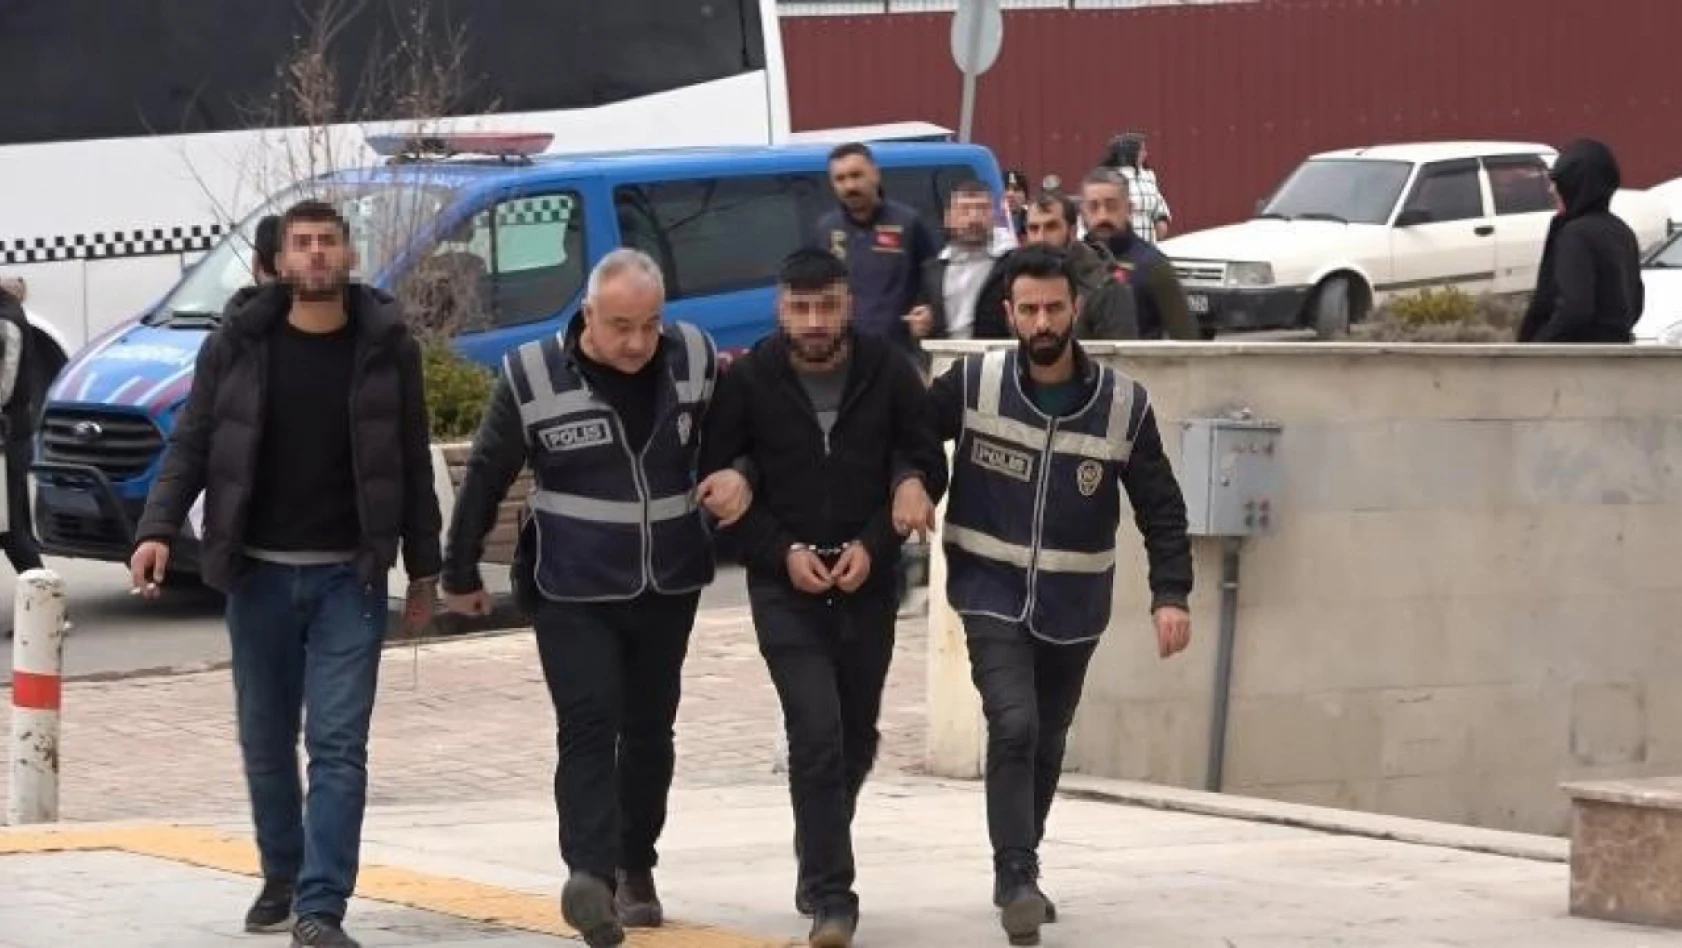 Elazığ'da silahlı çatışma olayına karışan suç makineleri tutuklandı